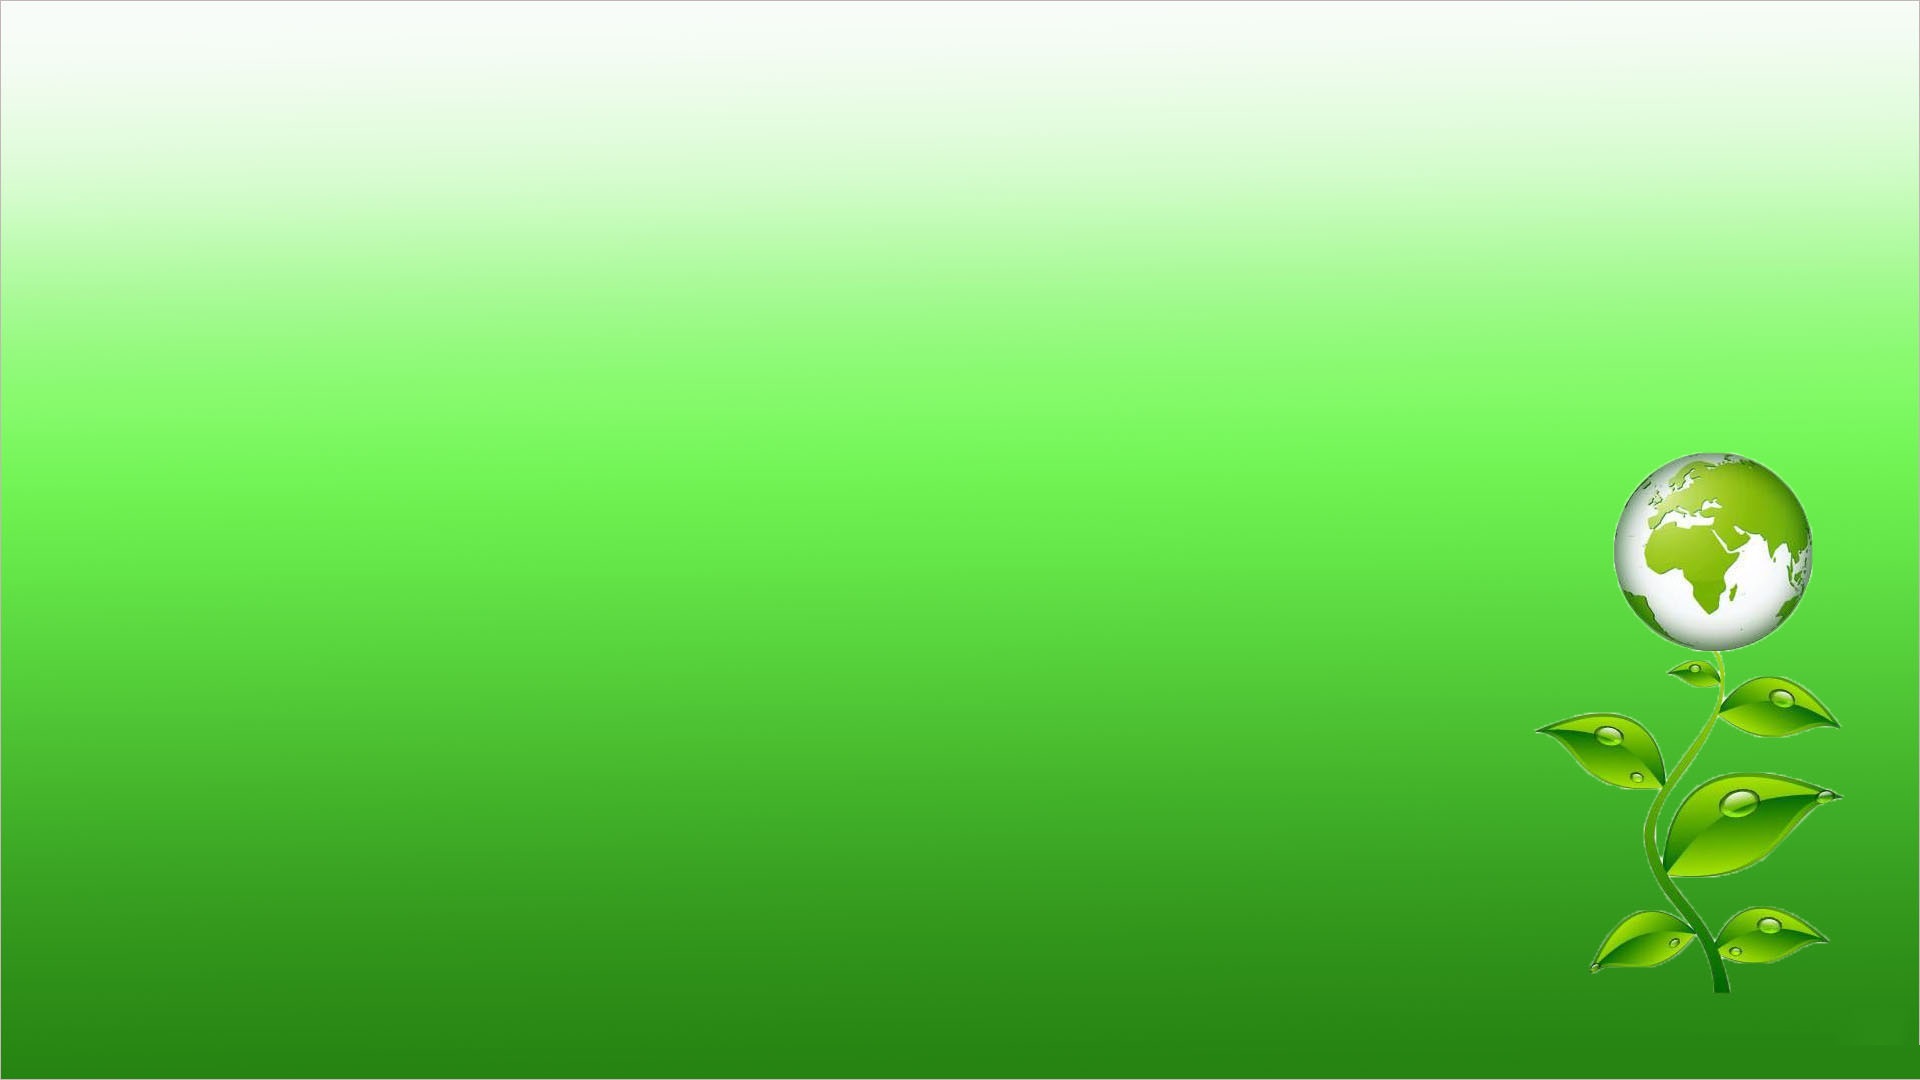 Cùng tham quan một bộ sưu tập các hình nền Powerpoint màu xanh lá cây tuyệt đẹp, giúp cho bản trình bày của bạn trở nên đầy sức sống, mộc mạc và thanh lịch. Những gam màu tươi sáng và dễ thương sẽ giúp cho những bài thuyết trình của bạn trở nên đặc biệt hơn.